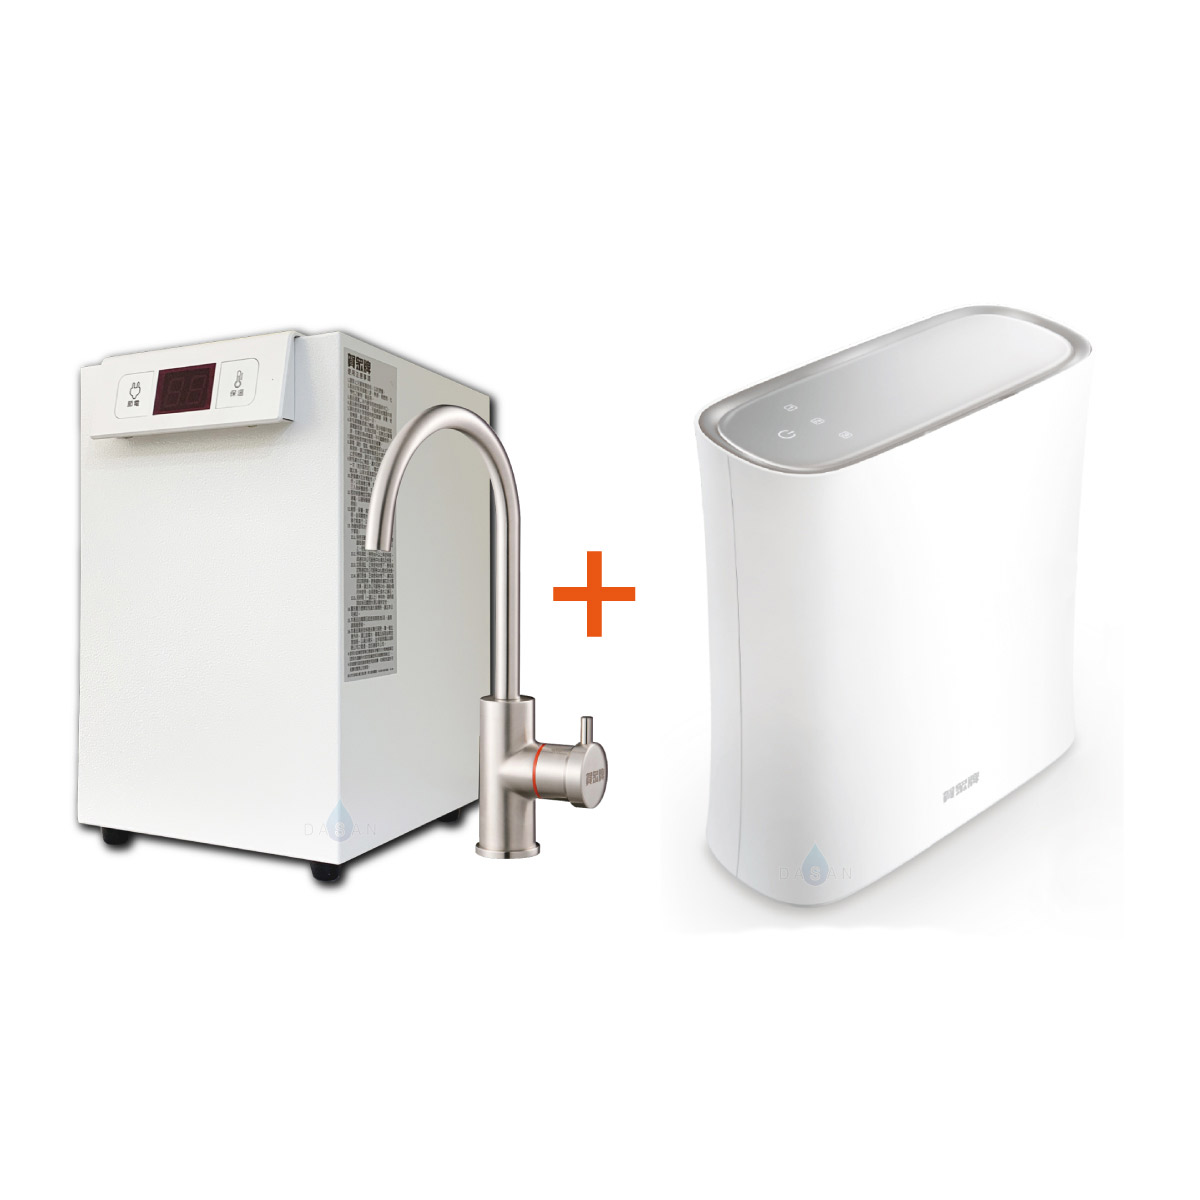 【賀眾牌】UW-2202HW-1 廚下型節能冷熱飲水機加熱器+UR-5902JW-1無桶式RO逆滲透淨水器